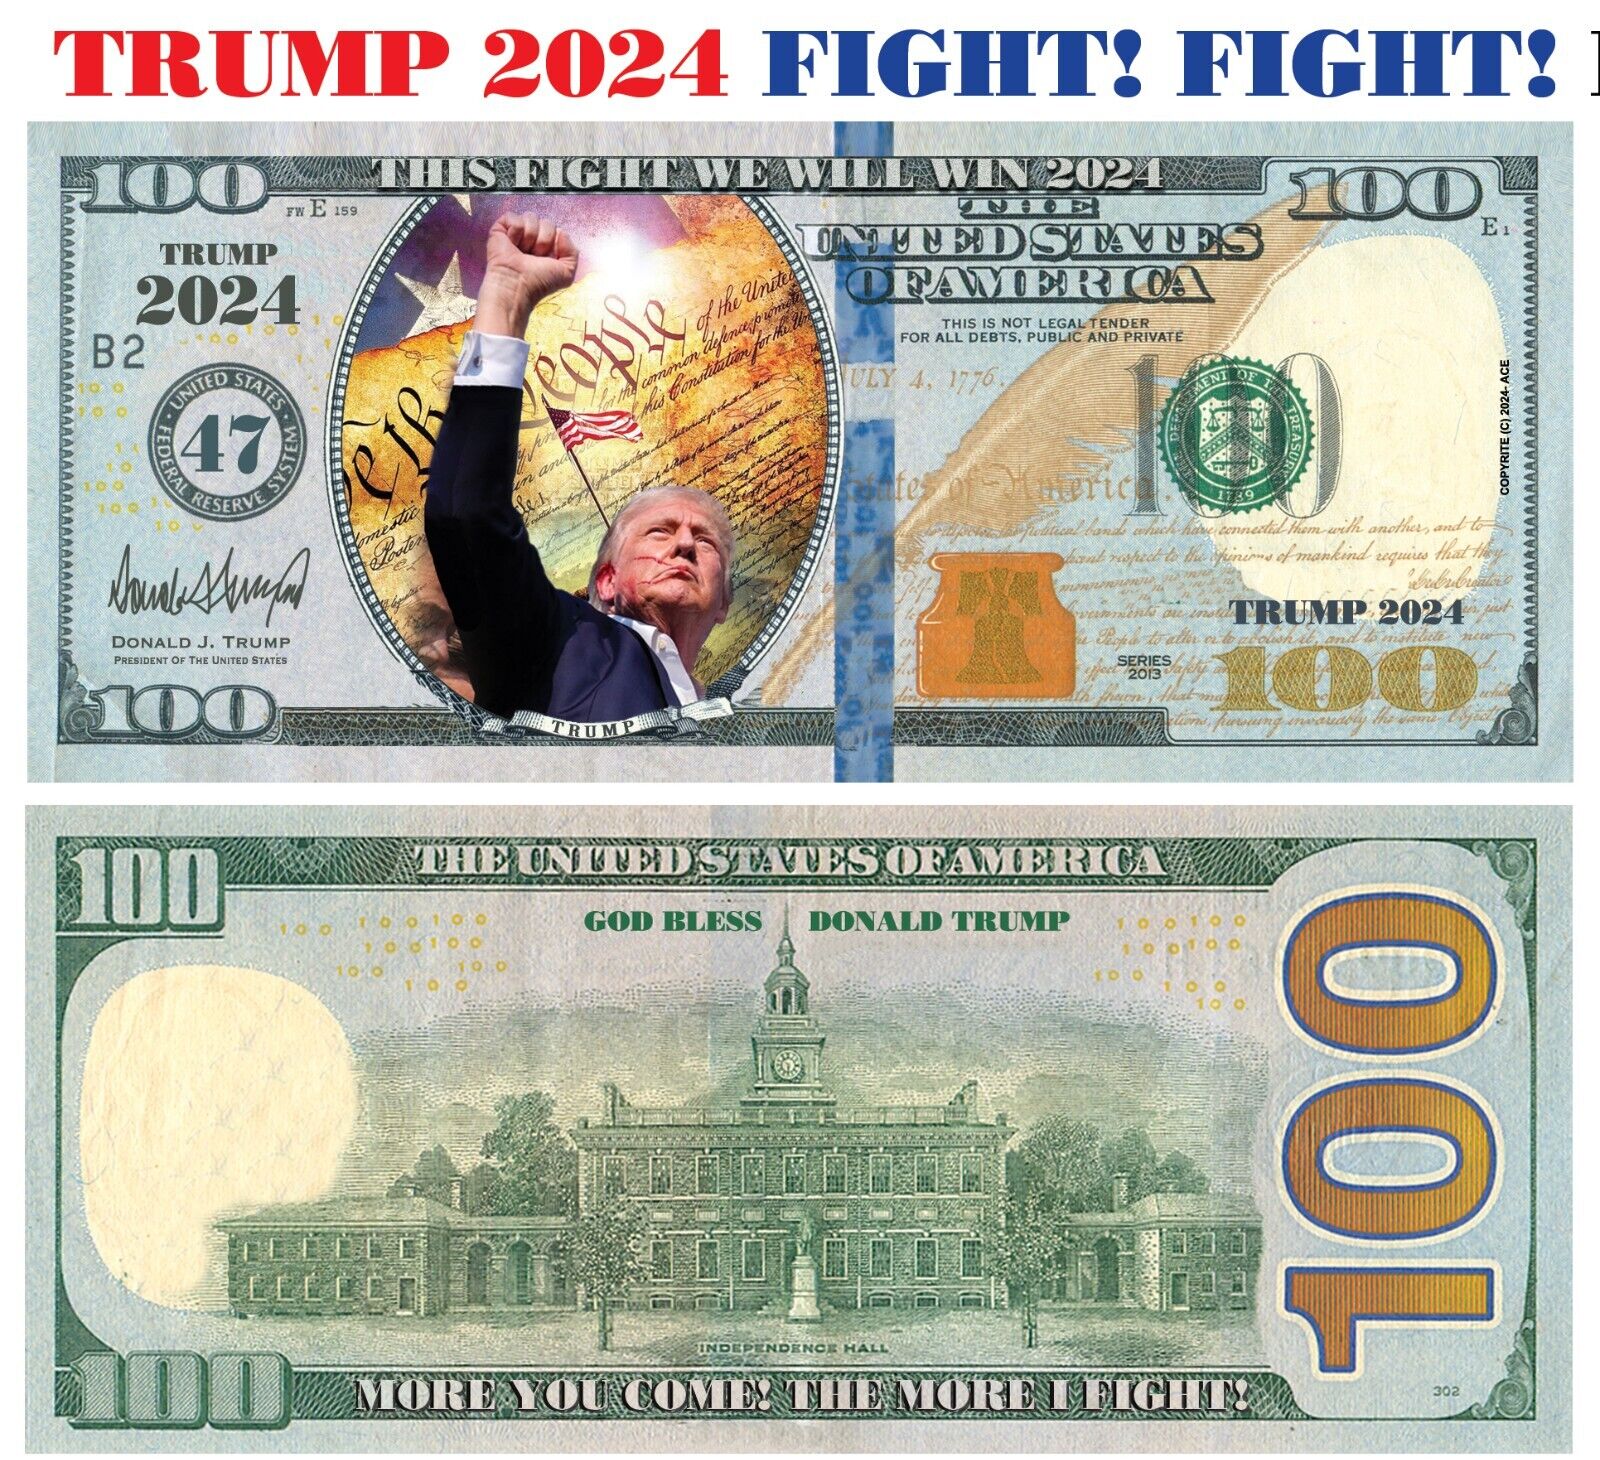 25 pack TRUMP FIGHT, FIGHT FIGHT 2024 Dollar Bills Funny Money Maga